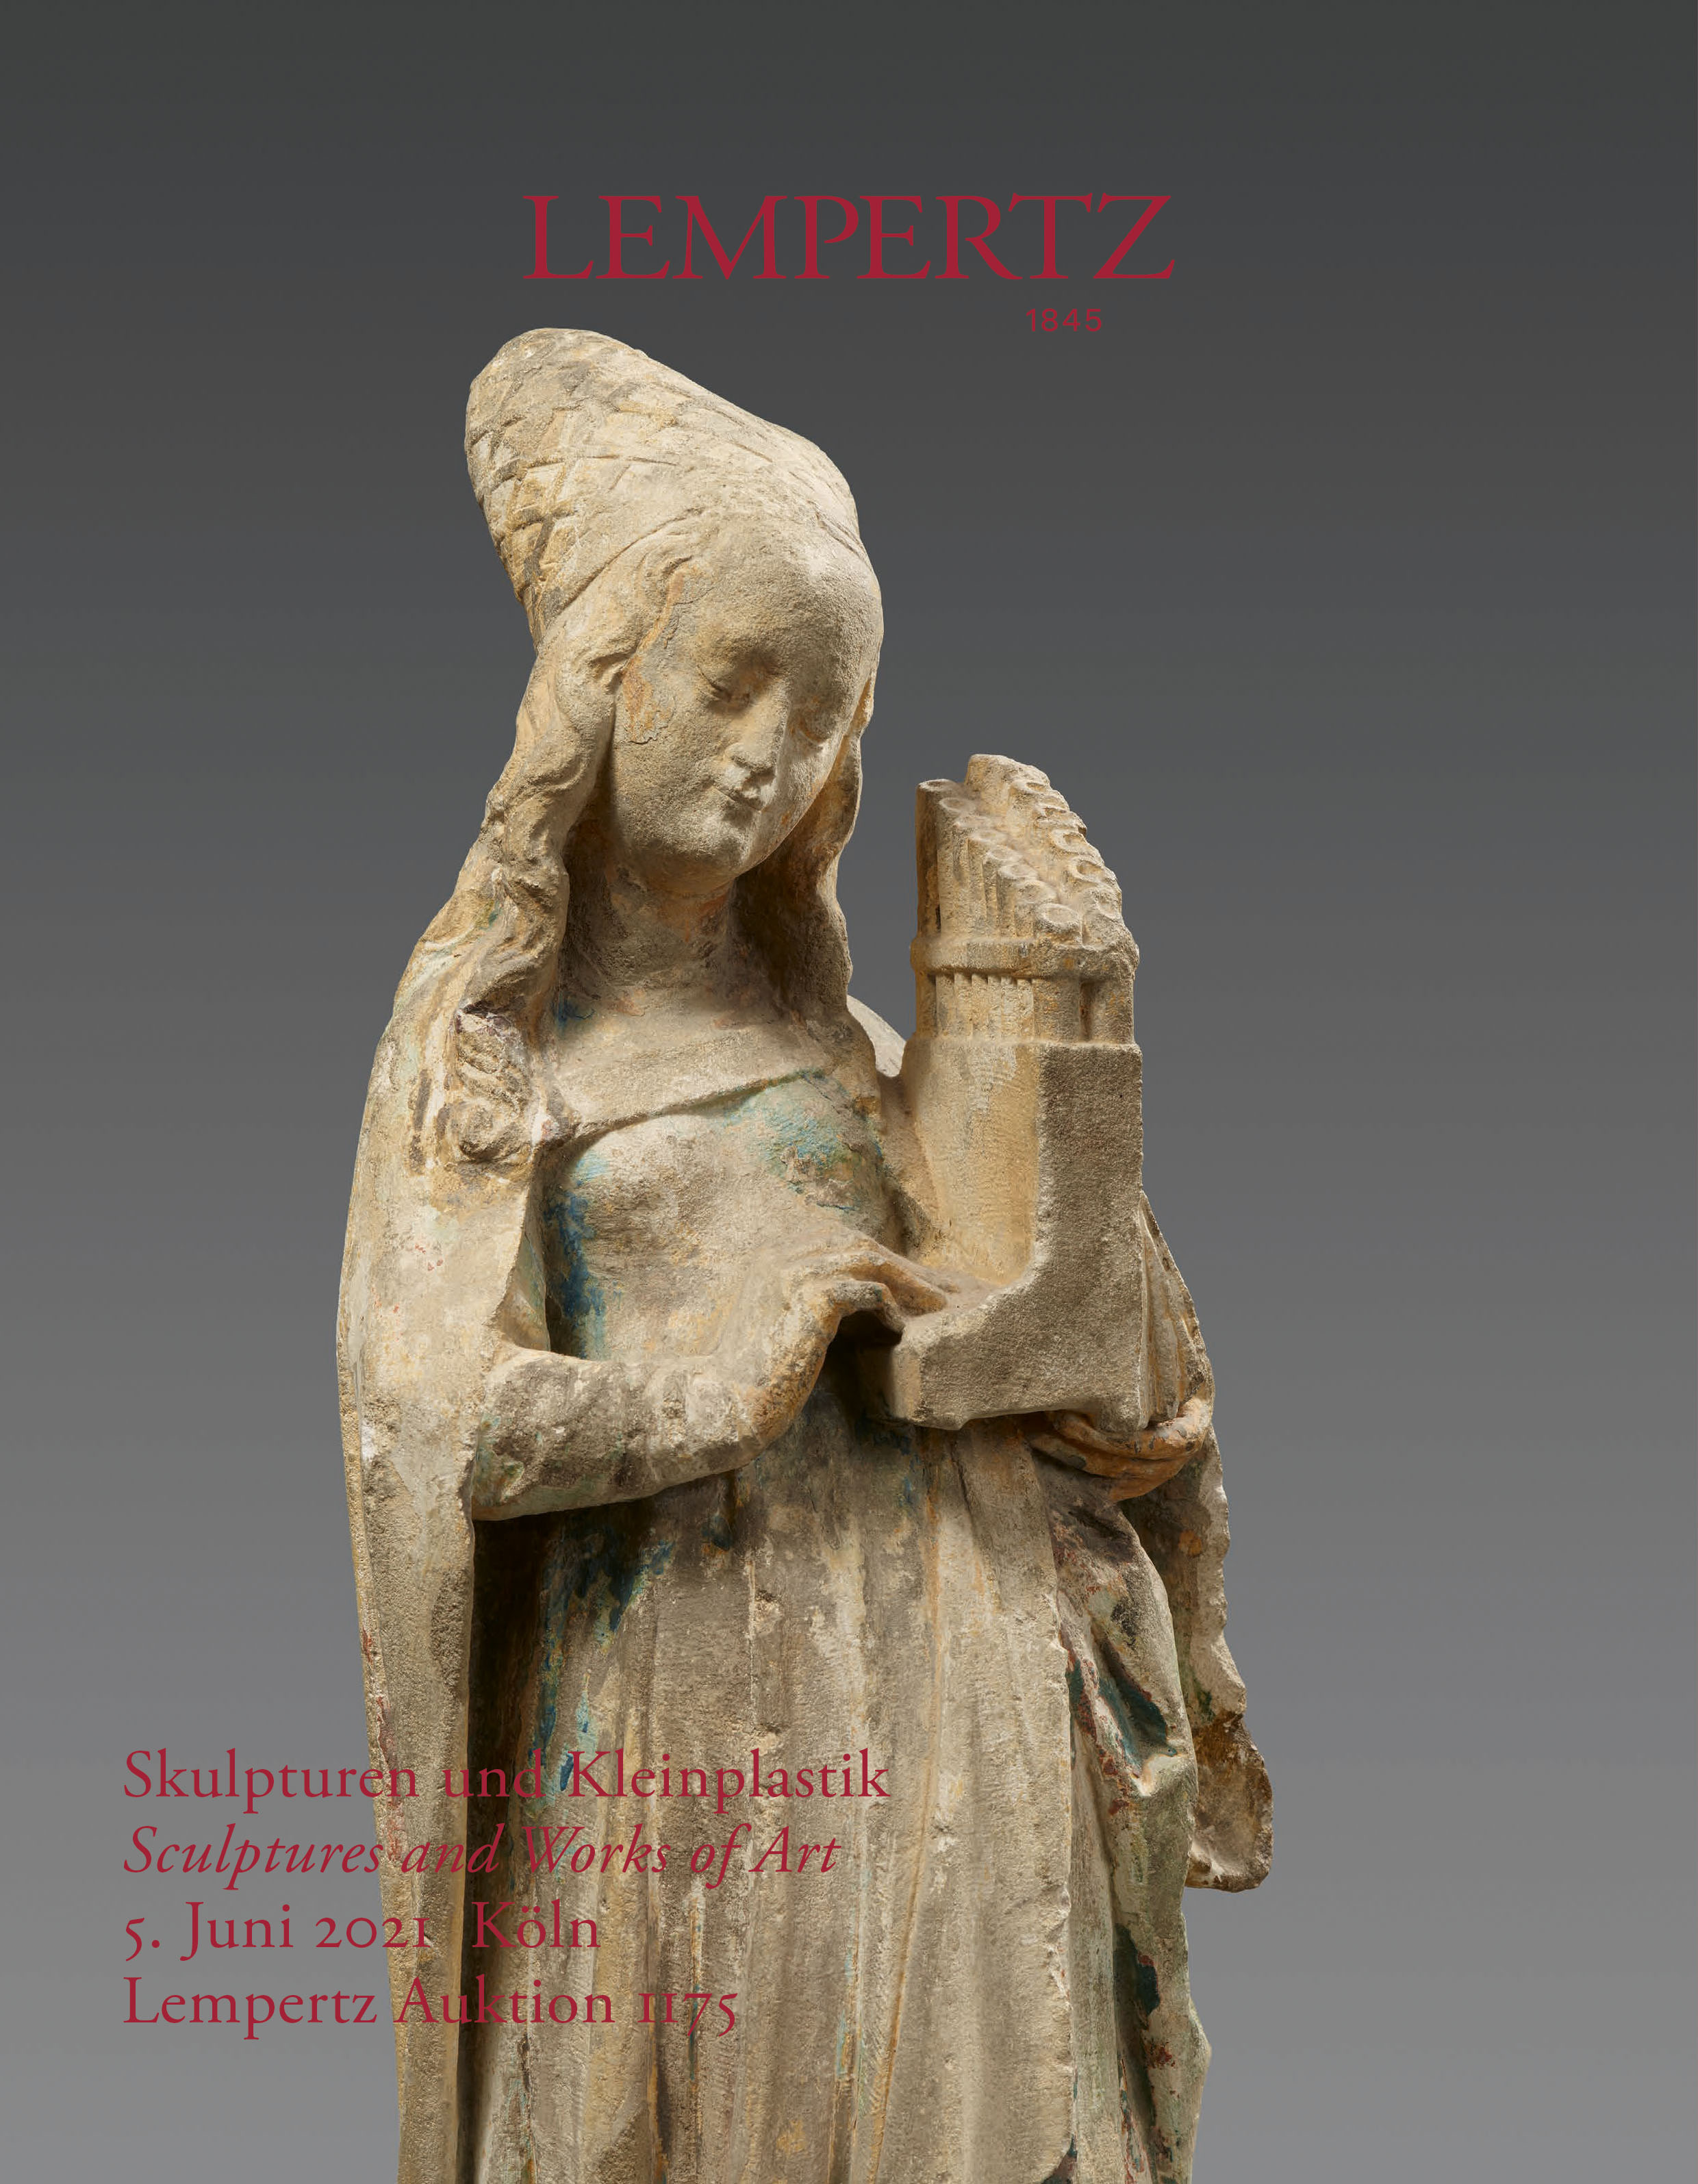 Auktionskatalog - Skulpturen - Online Katalog - Auktion 1175 – Ersteigern Sie hochwertige Kunst in der nächsten Lempertz-Auktion!